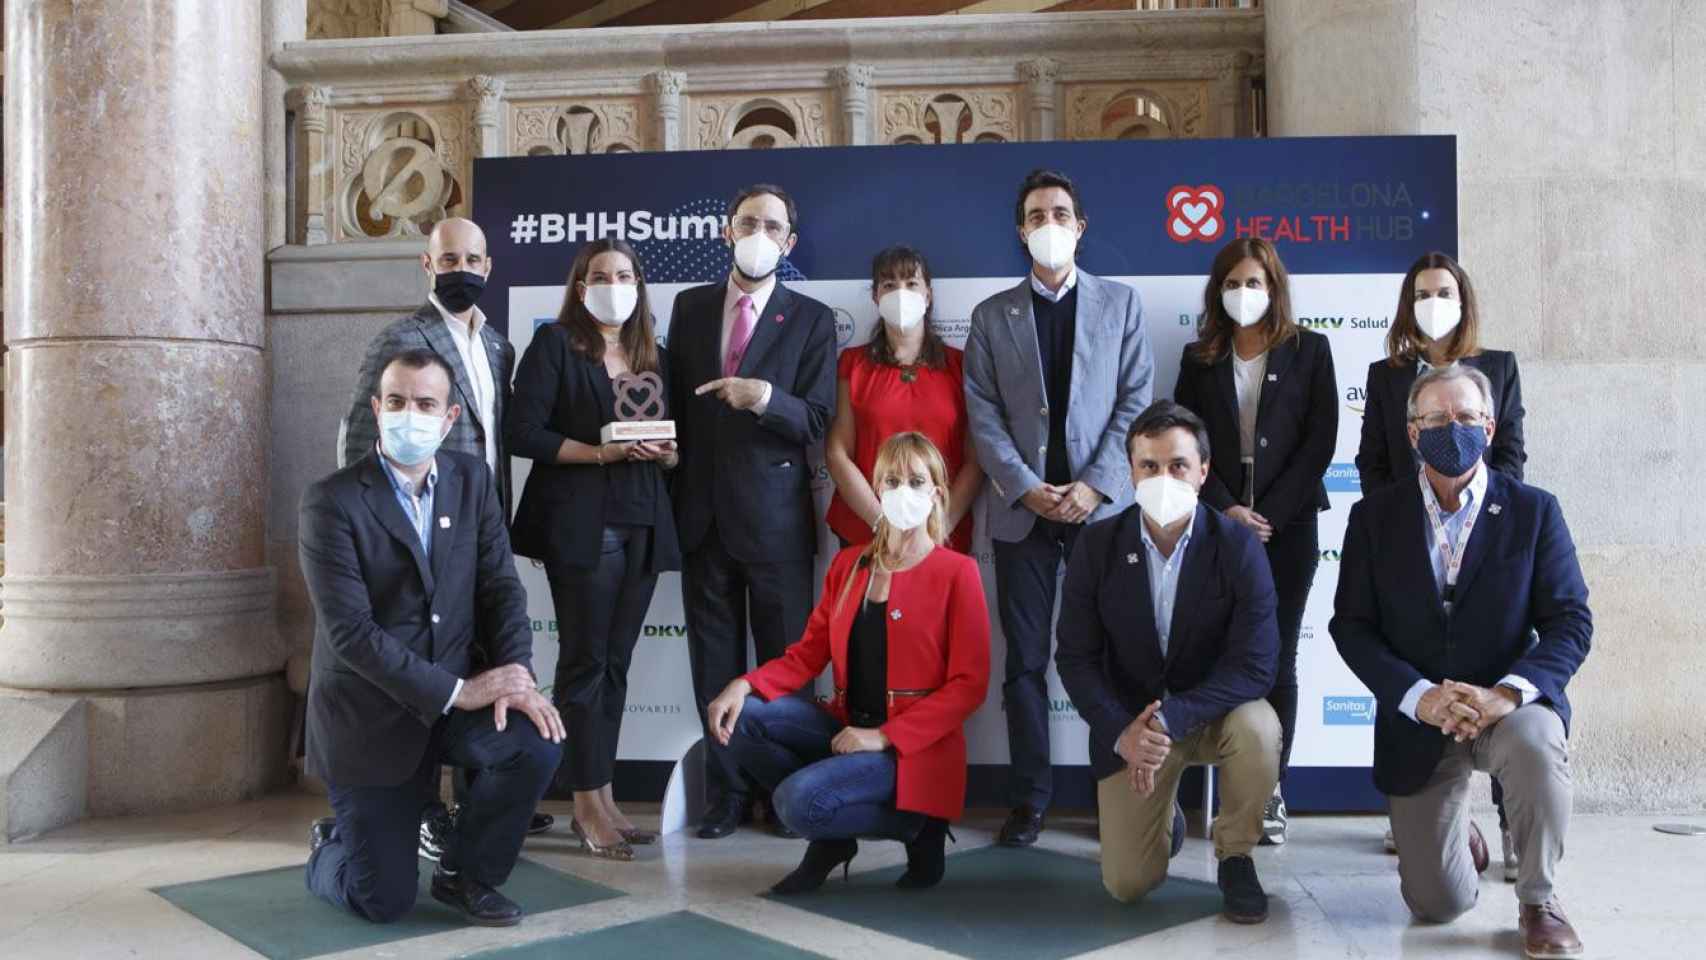 Algunos de los participantes en el Barcelona Health Summit sobre telemedicina  / BHH